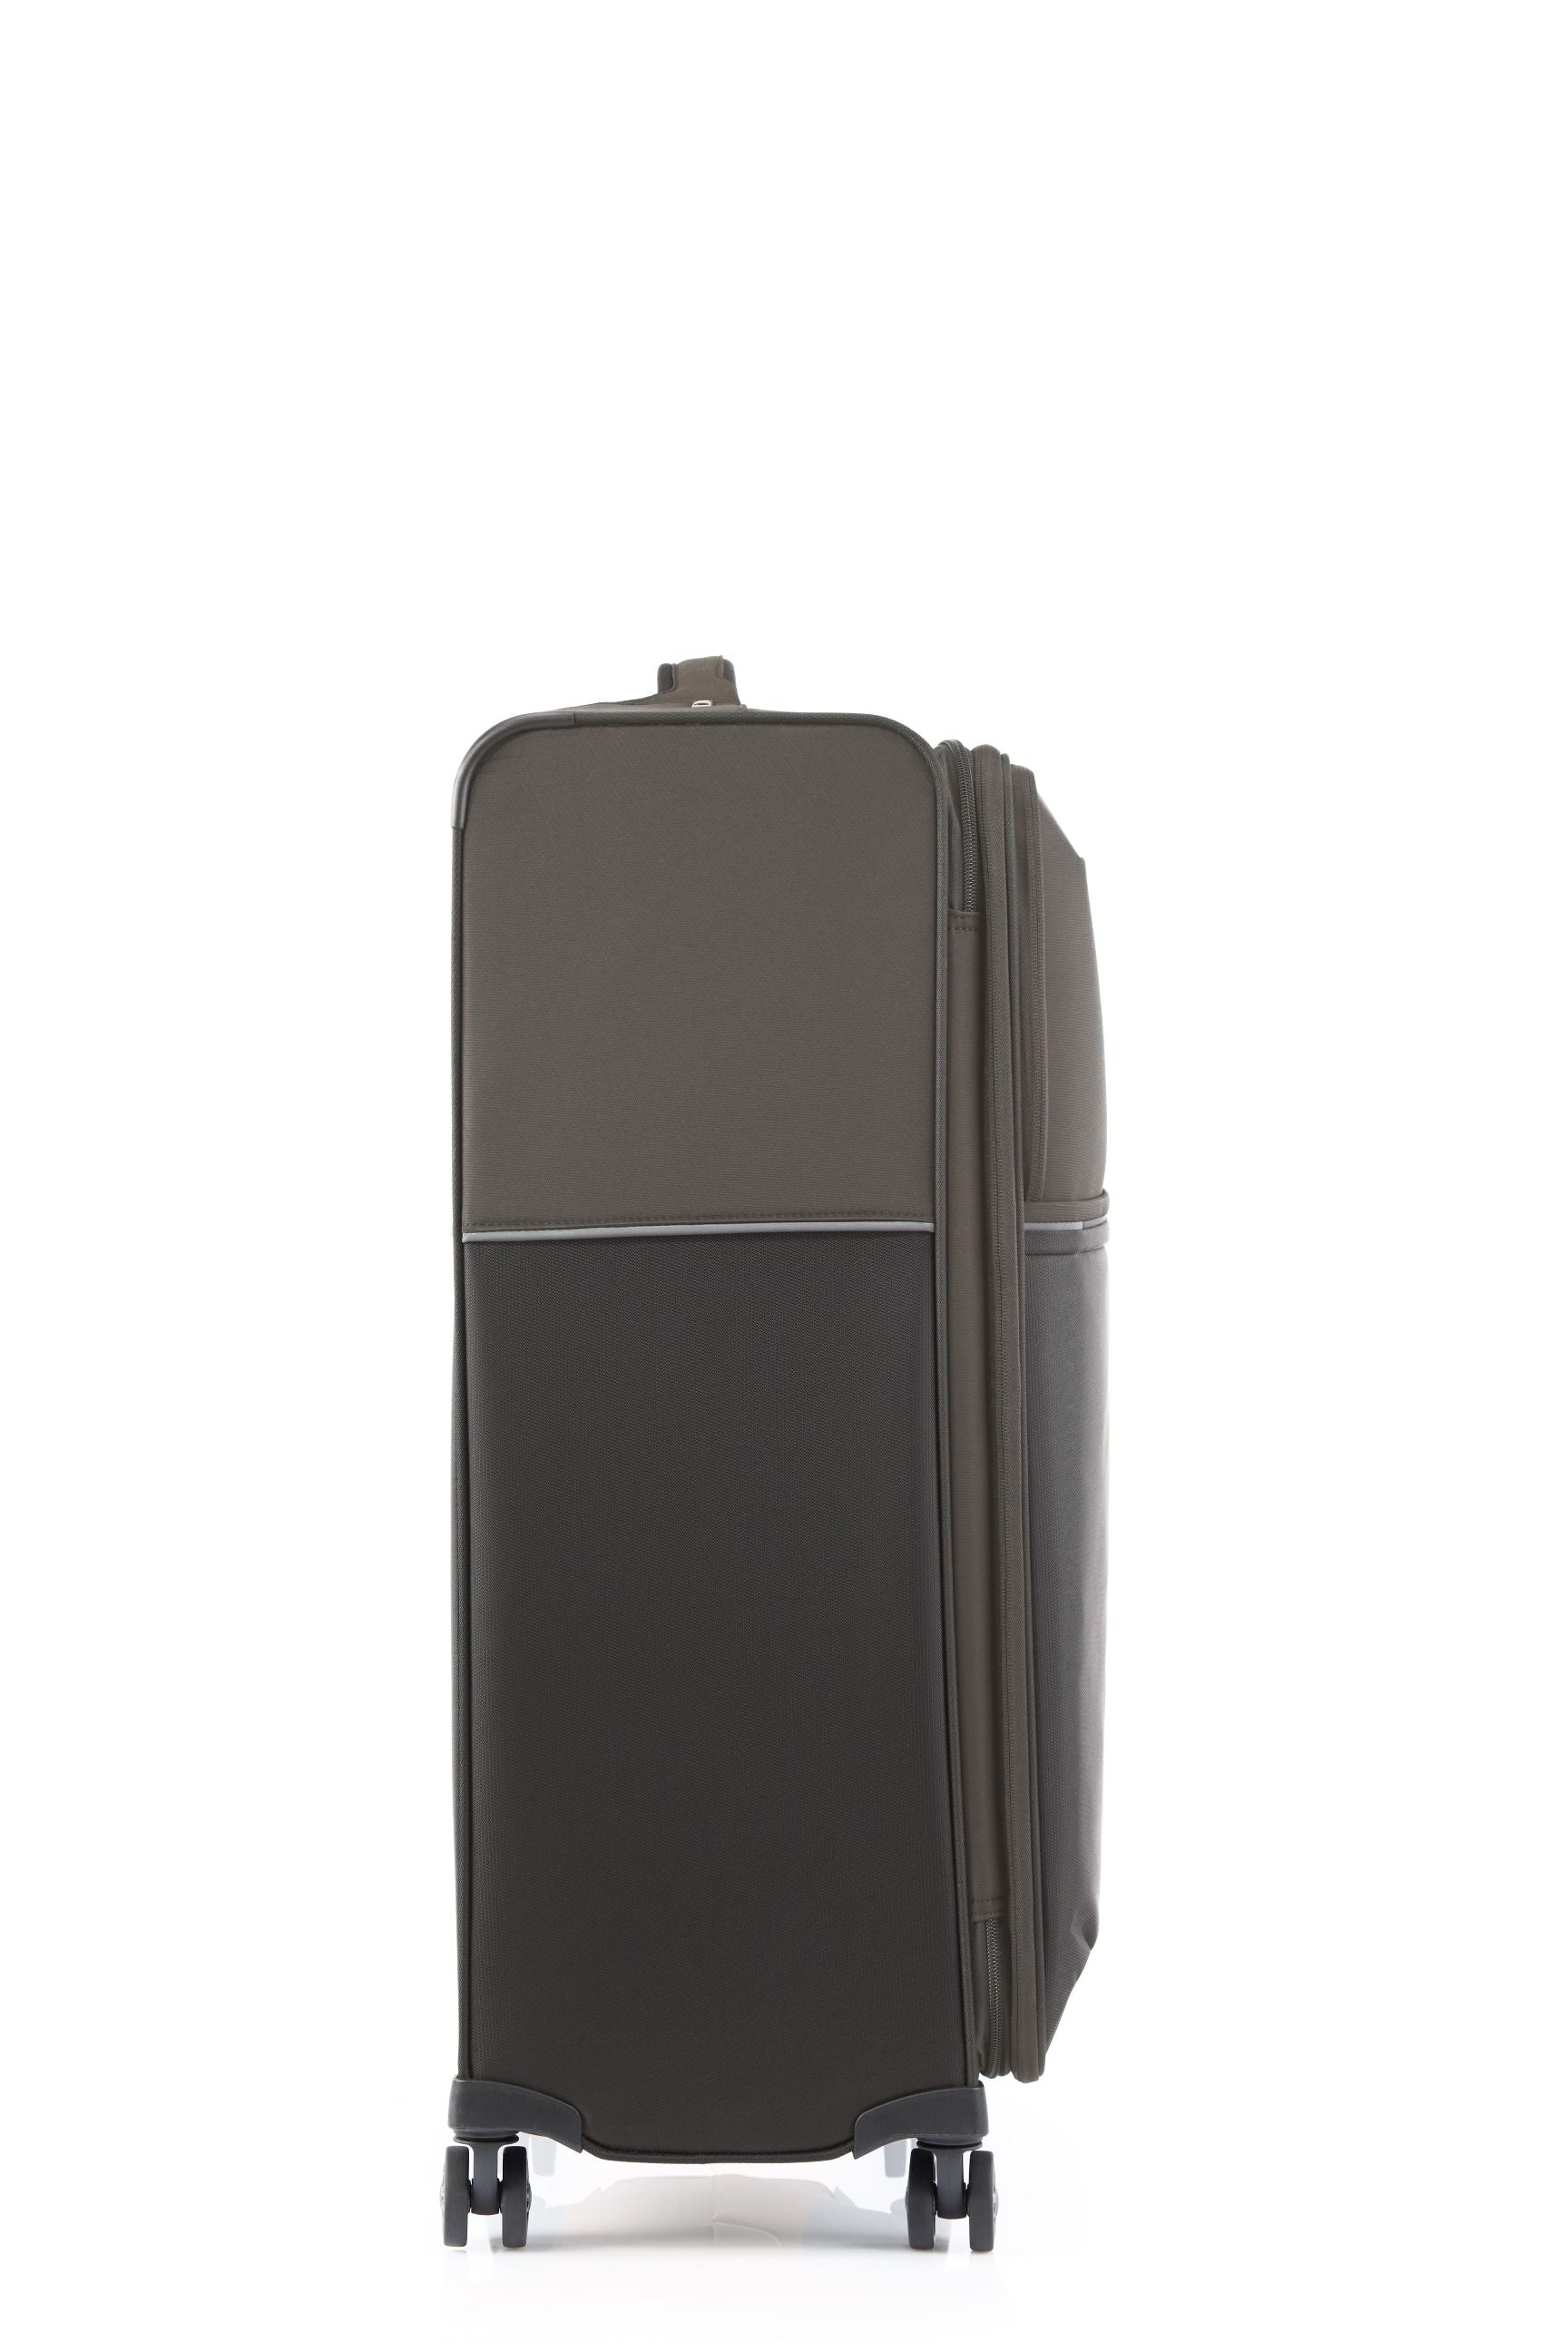 Samsonite 73HR 78cm Large Suitcase - Platinum Grey-5